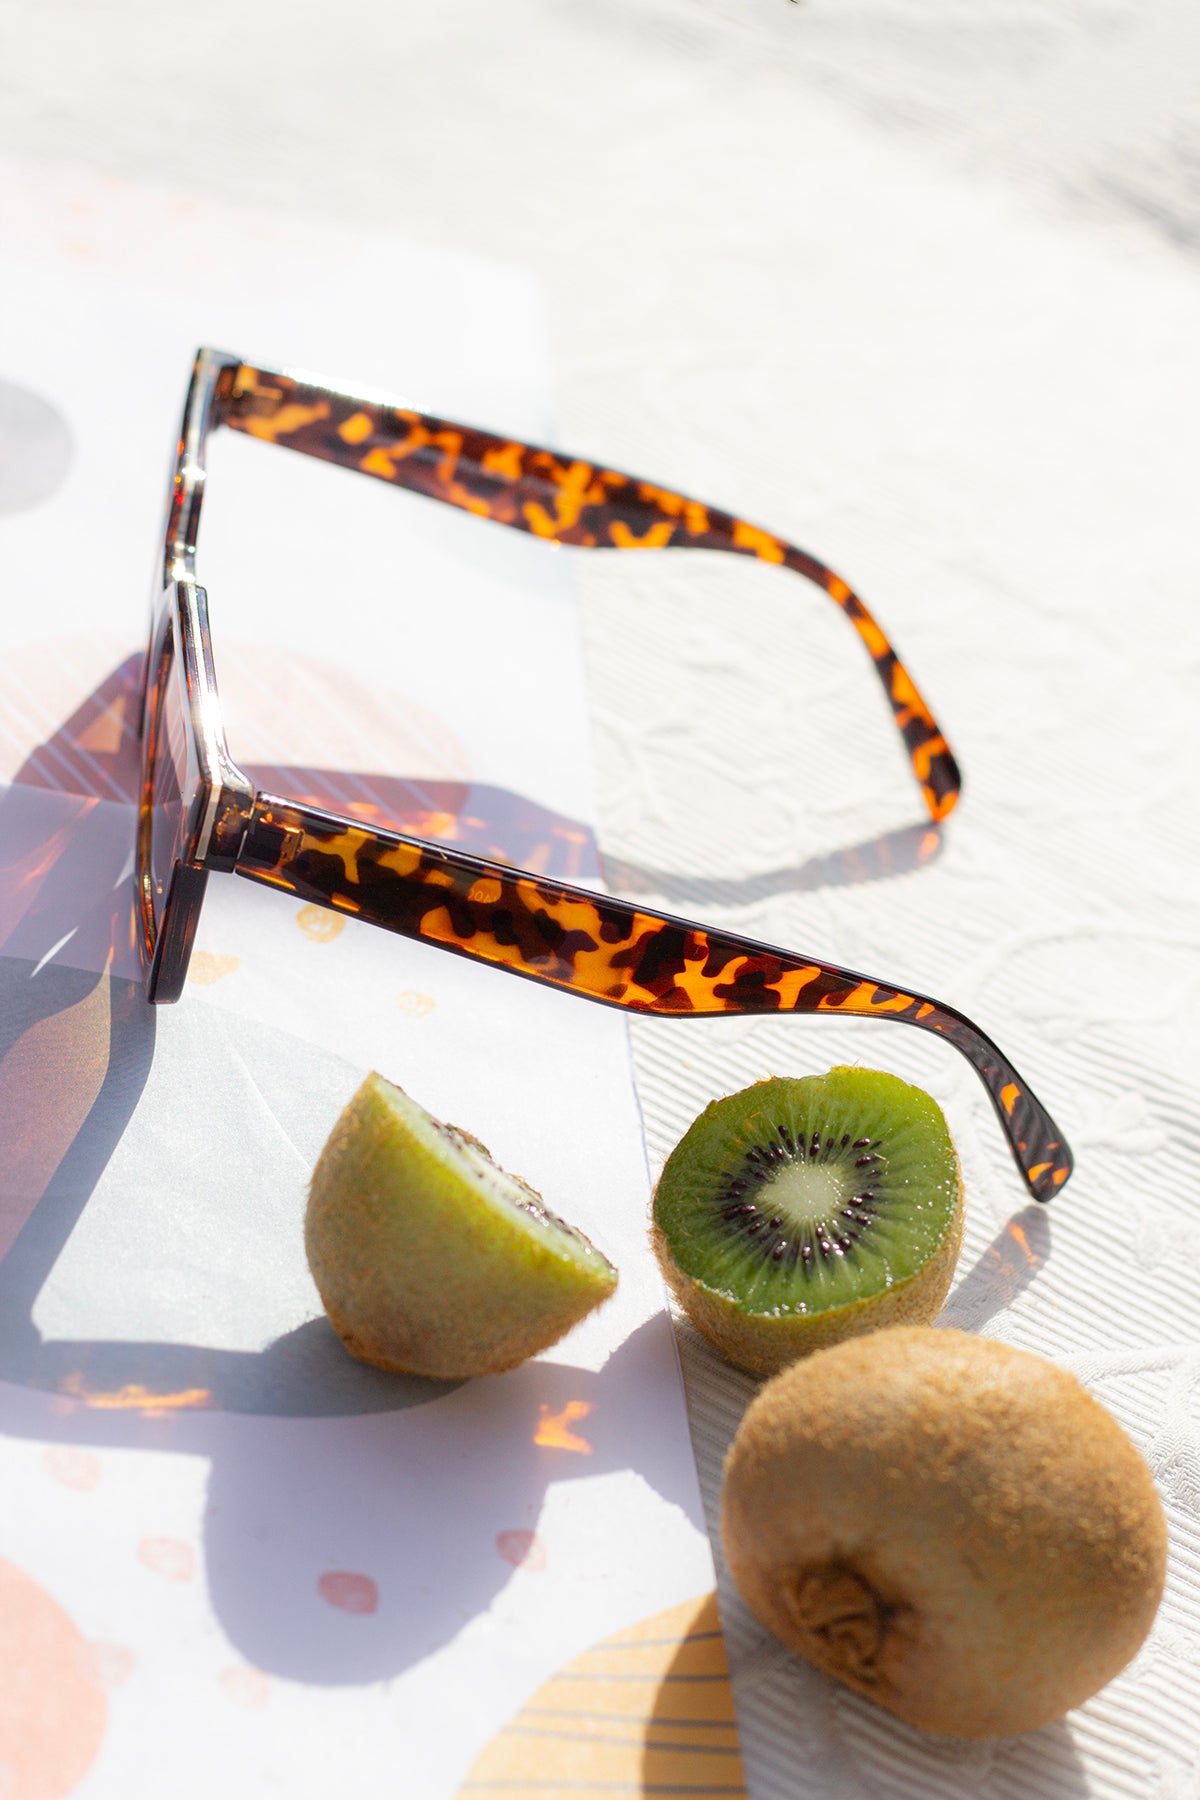 Square Narrow Block Sunglasses - Sugar + Style